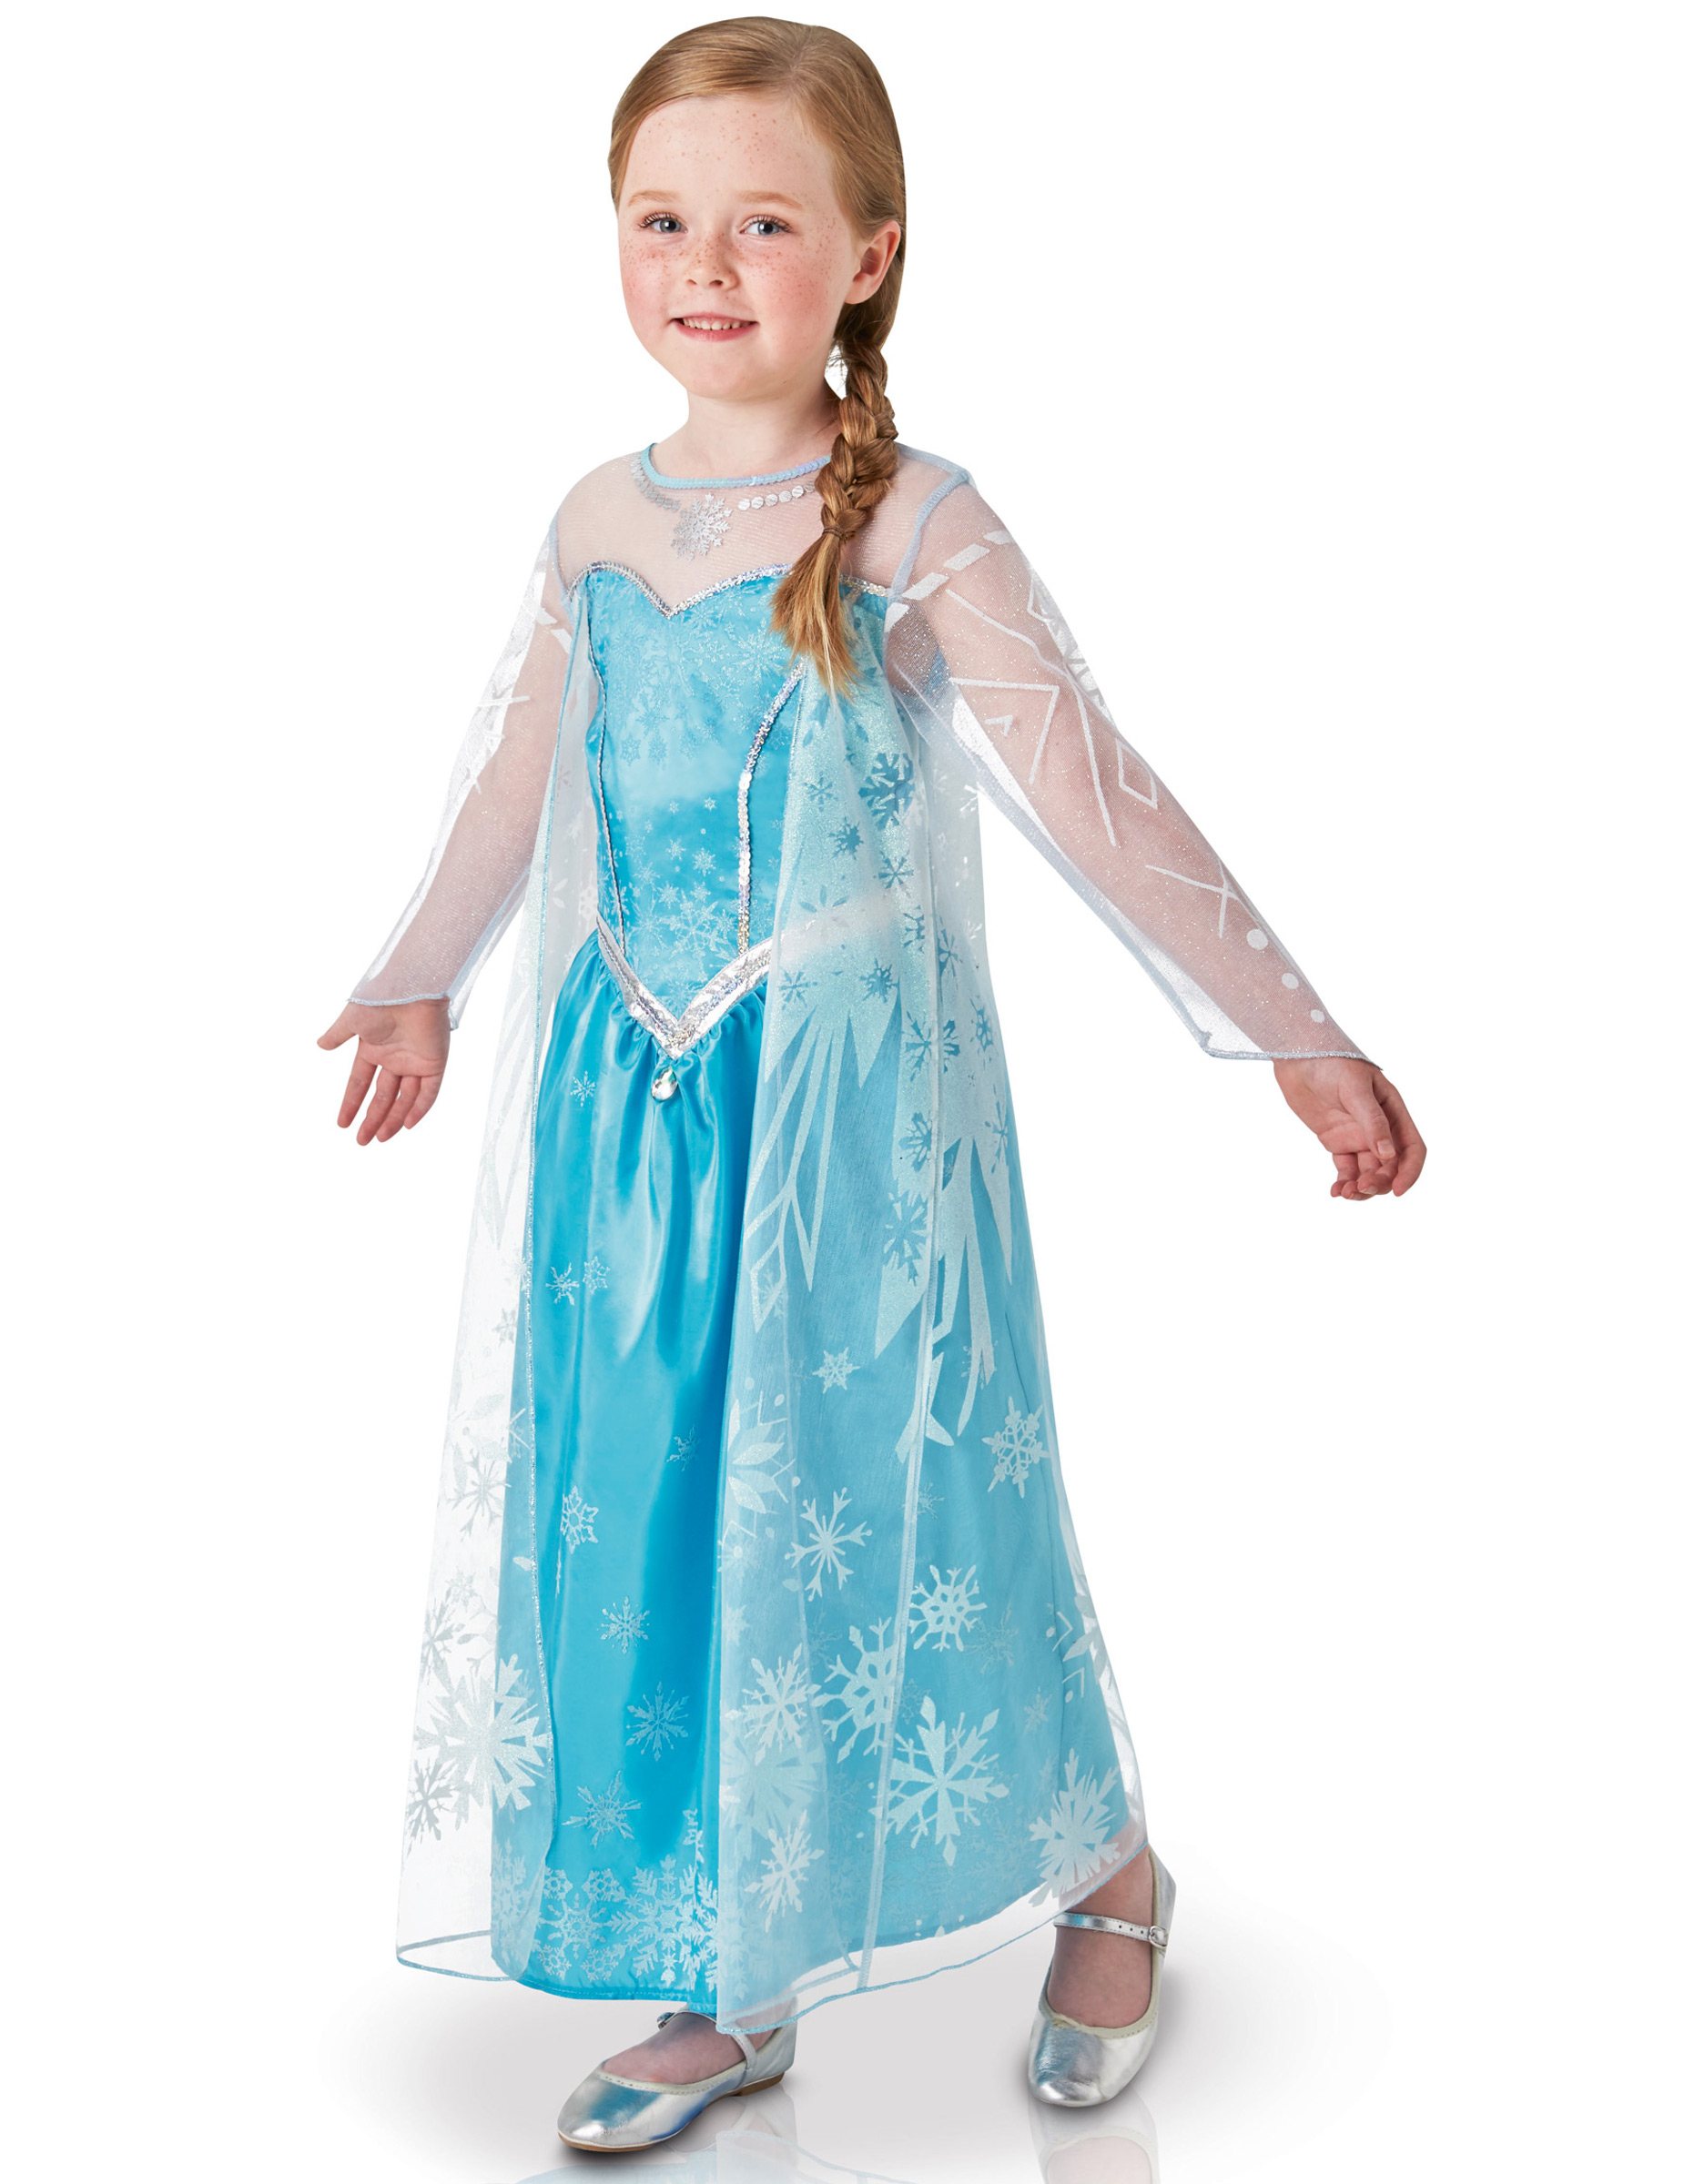 Disney Frozen Die Eiskönigin Elsa Deluxe Kinderkostüm Lizenzware blau-weiss von RUBIES FRANCE